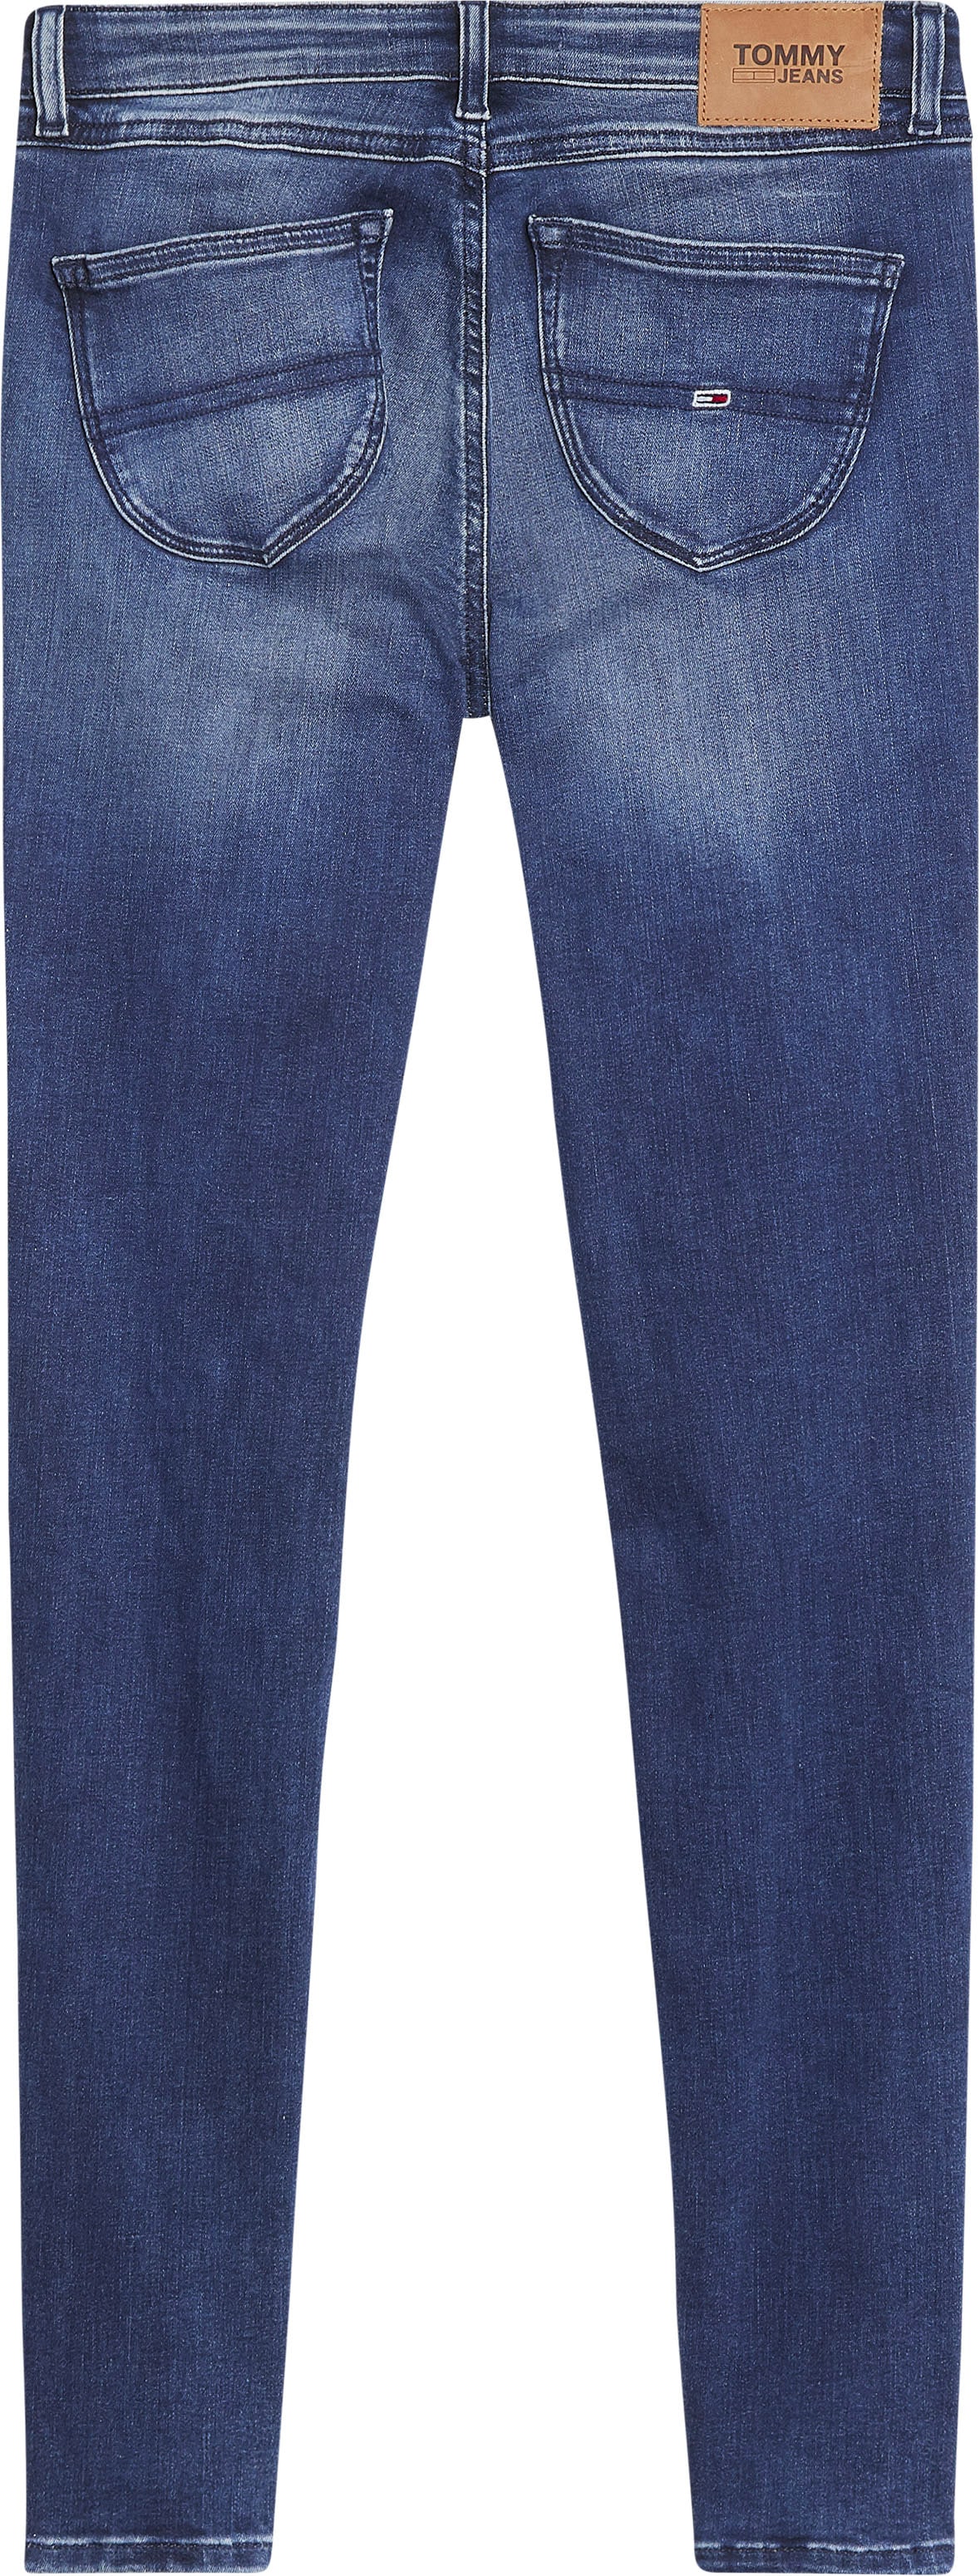 ♕ Tommy Jeans Skinny-fit-Jeans, mit Stretch, für perfektes Shaping  versandkostenfrei bestellen